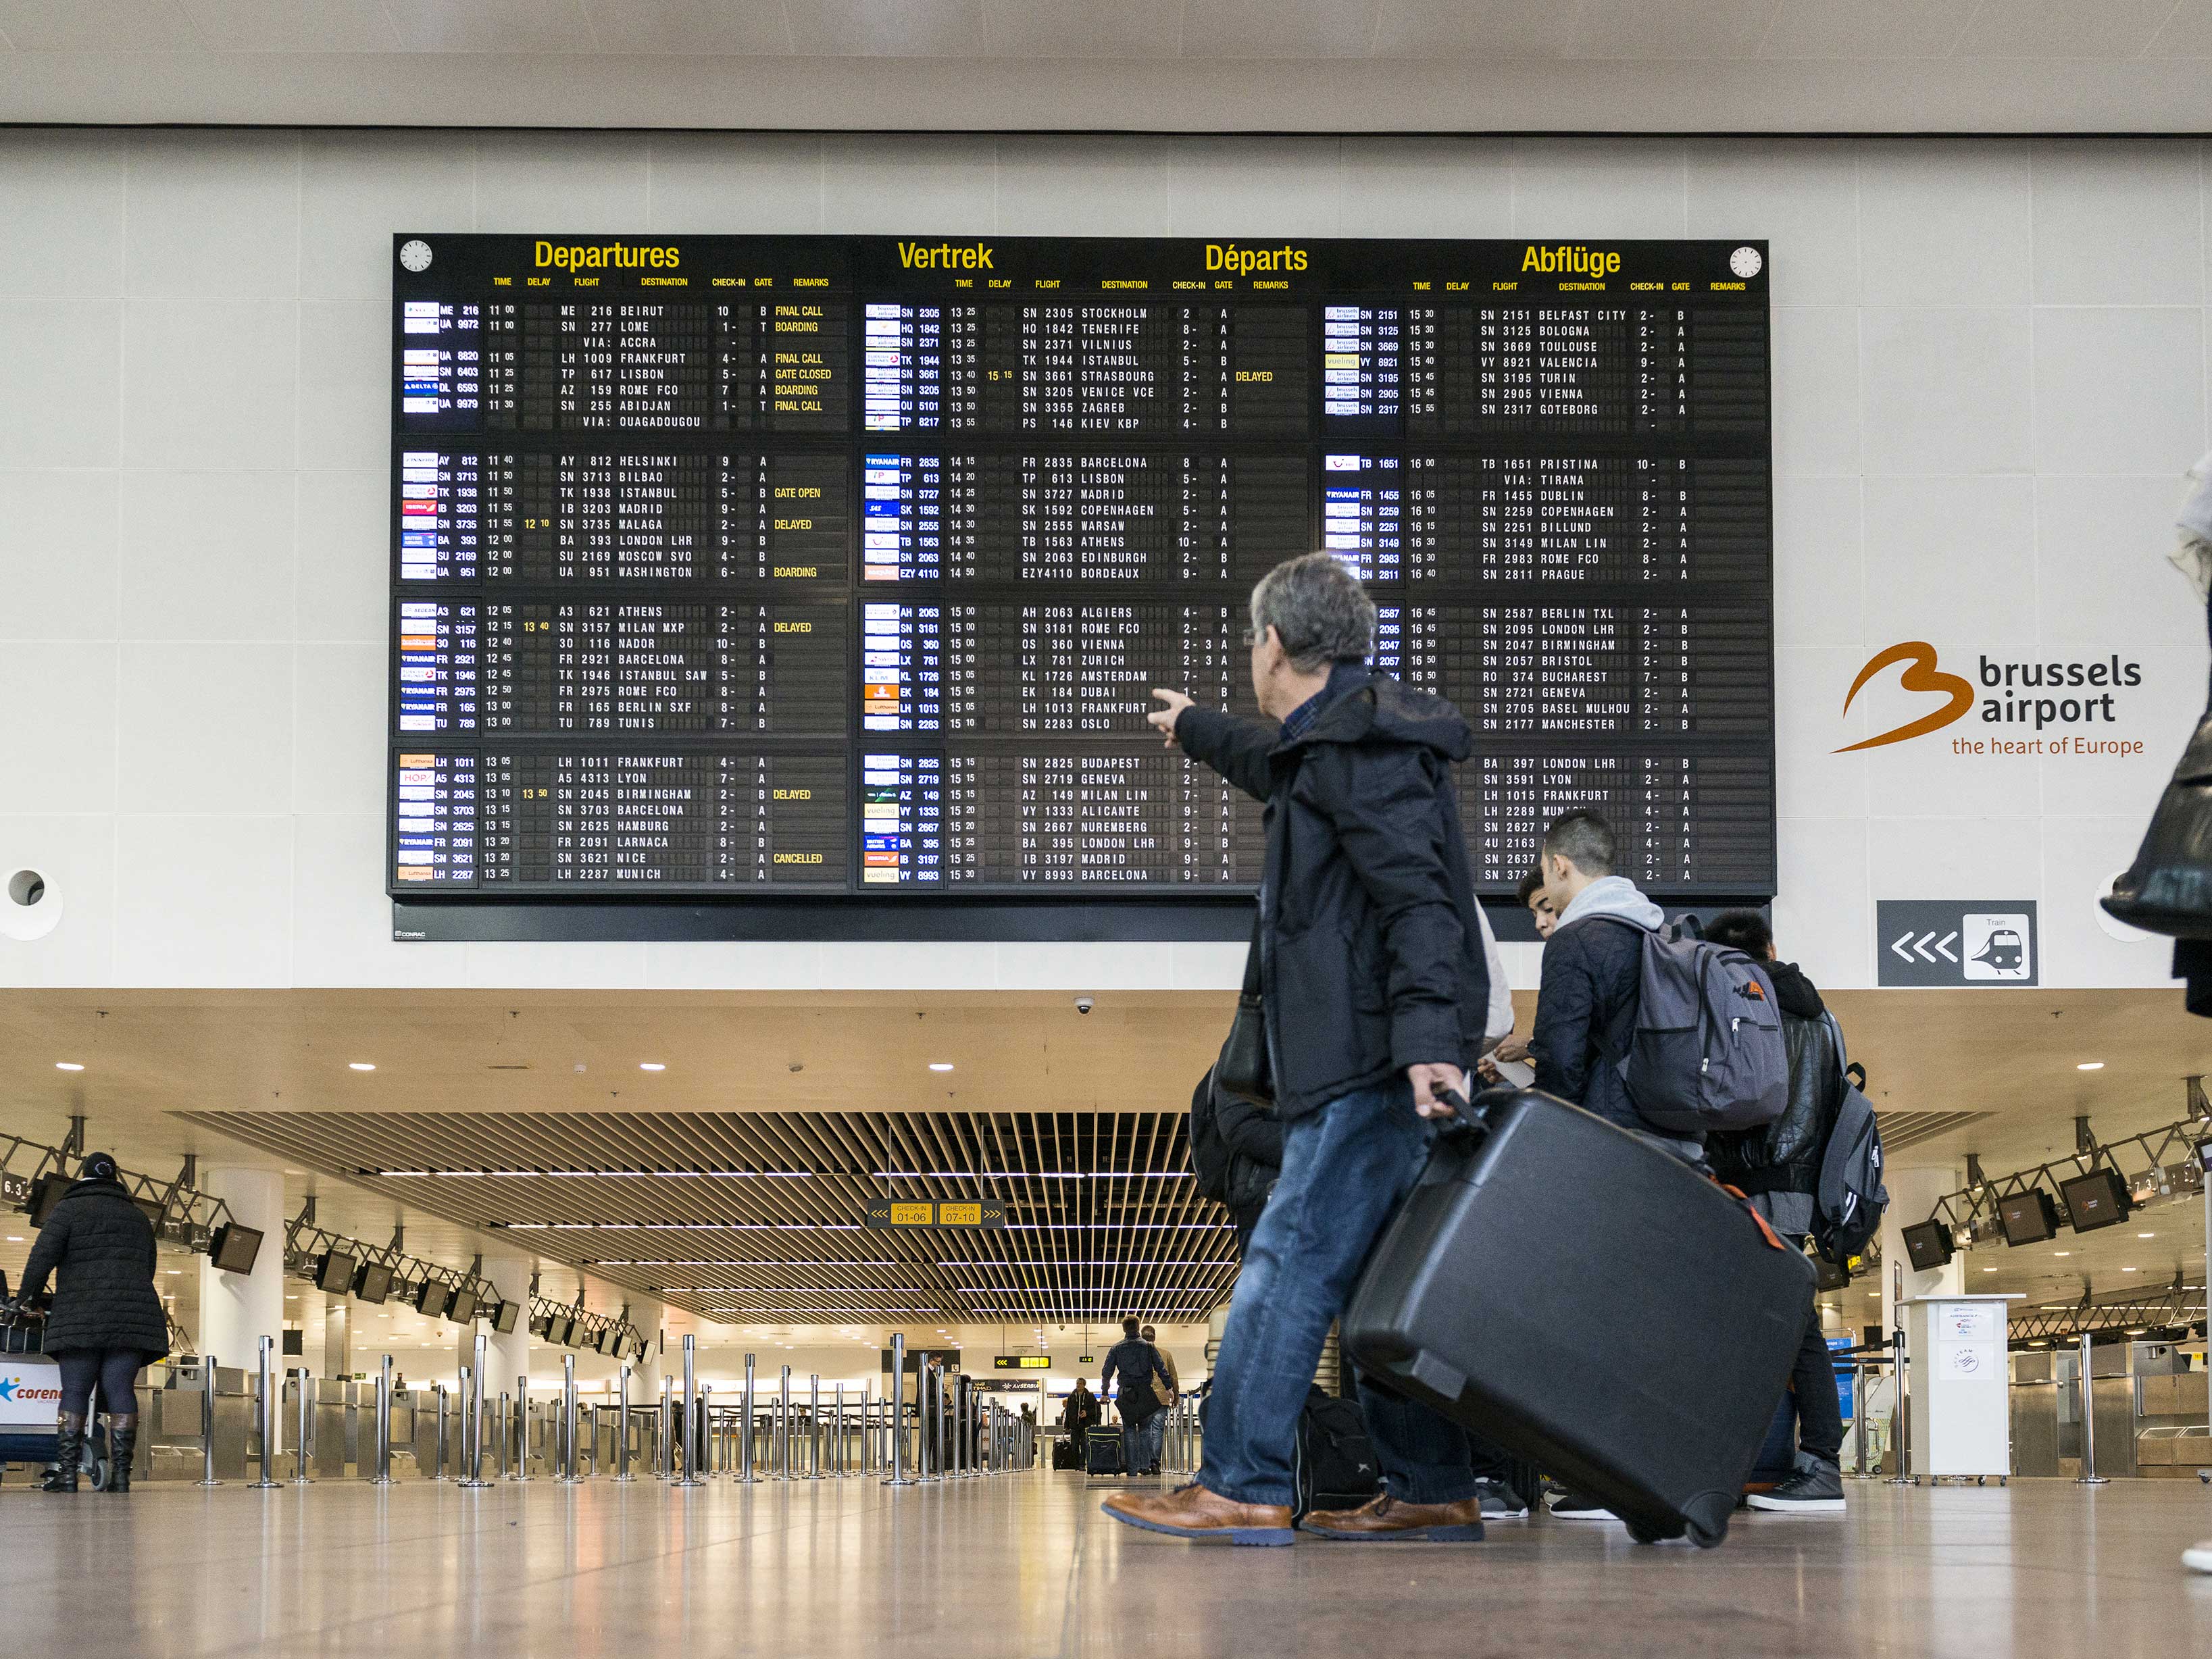 Aéroport de Bruxelles : 120 destinations au programme cet hiver 1 Air Journal